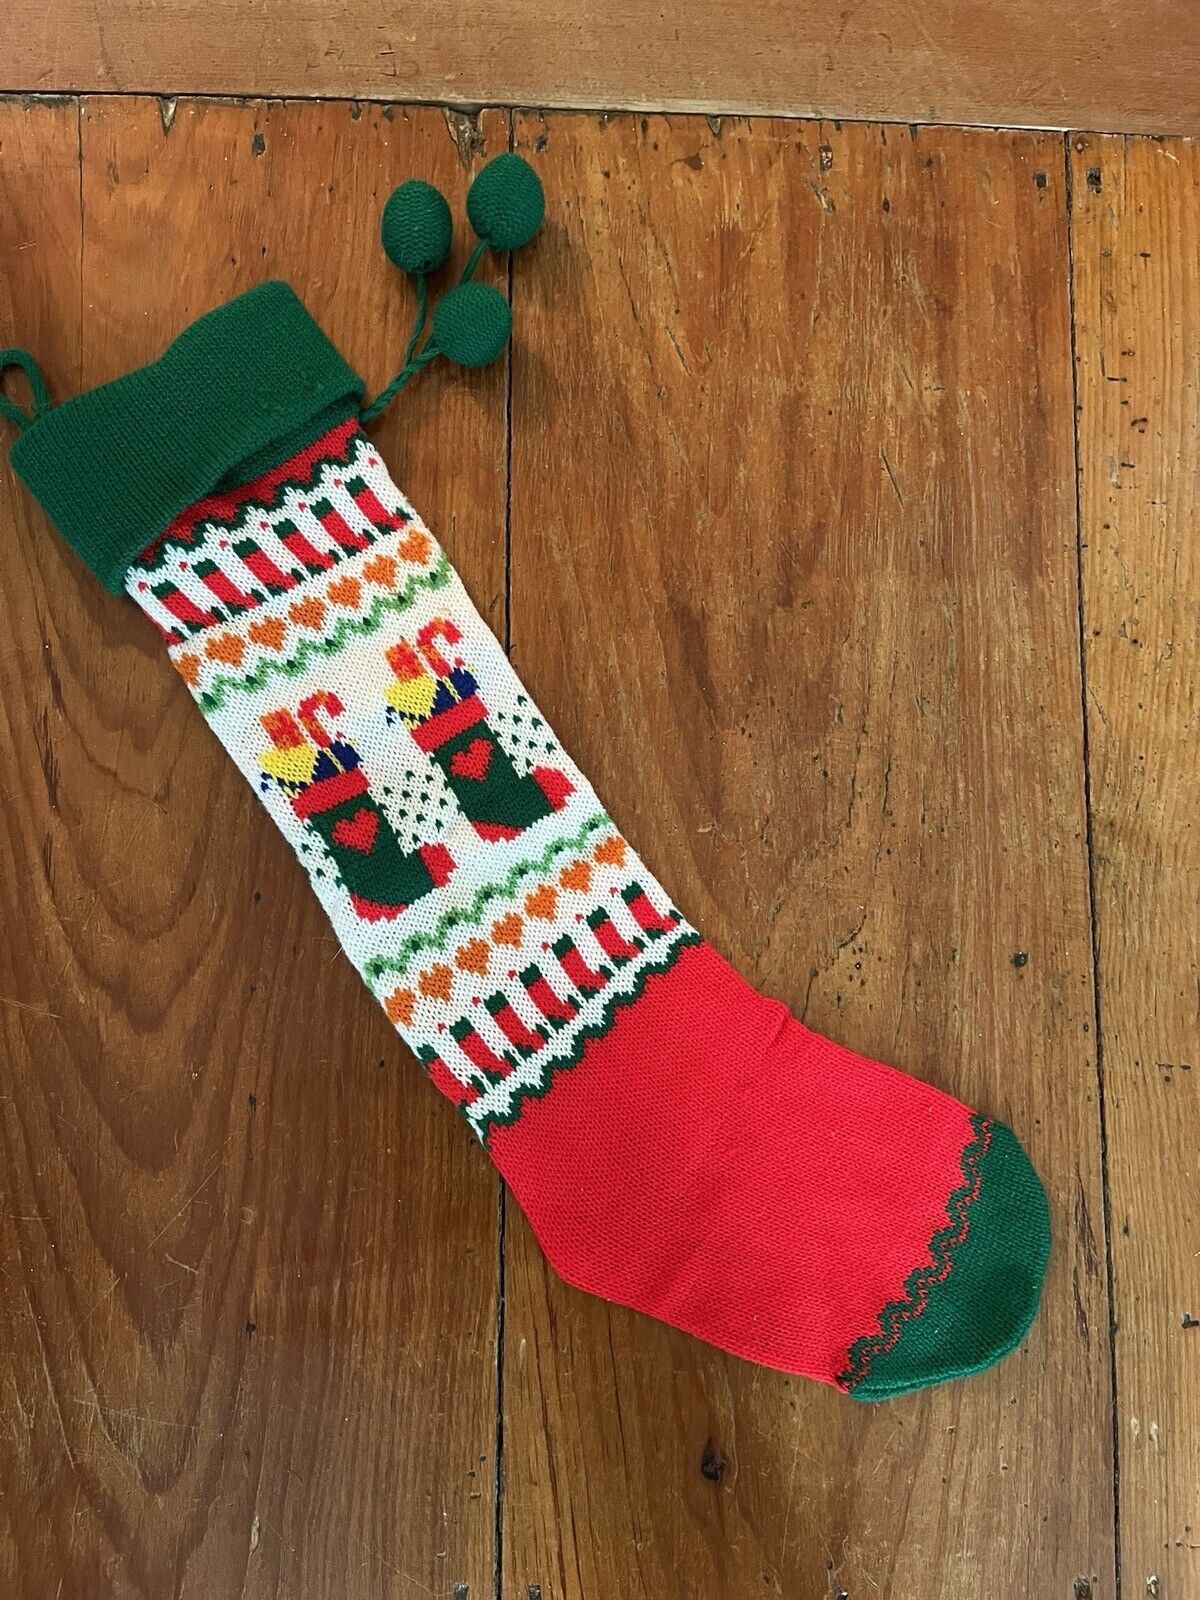 Vtg Knit Christmas Stocking XL 21” Stretchy Hearts Candy Canes Pom Pom NWOT